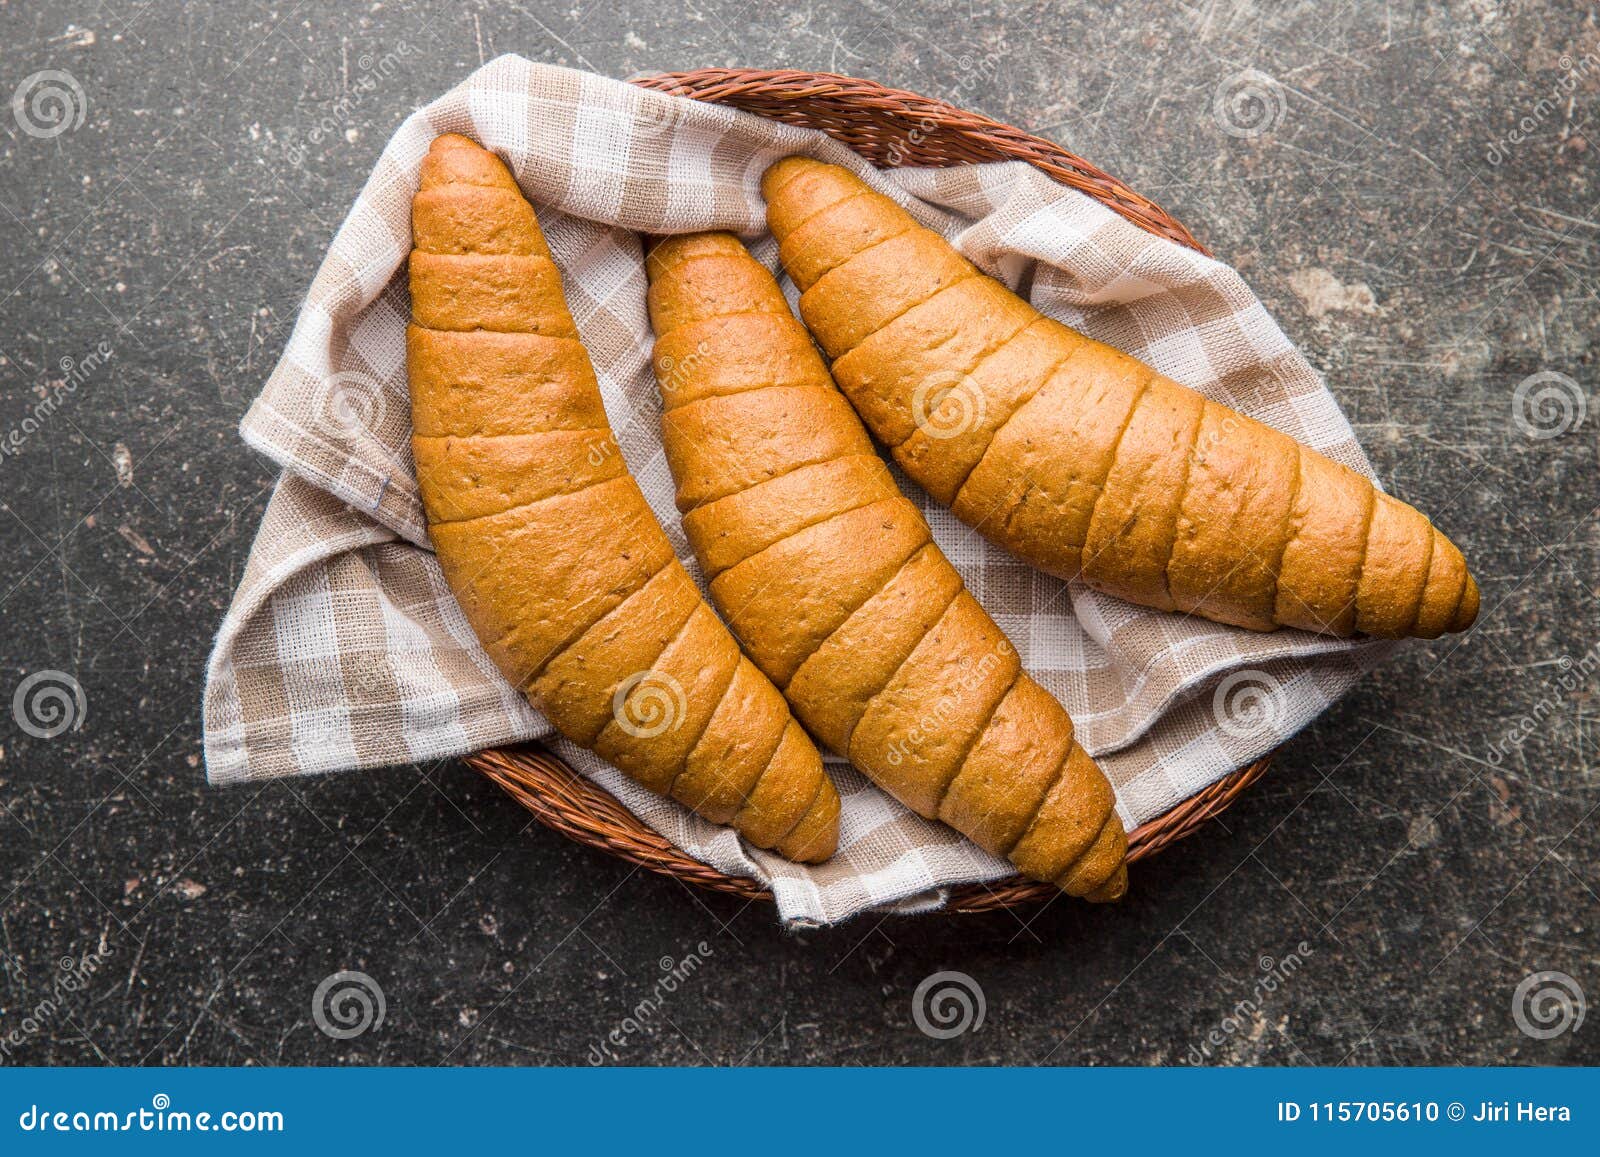 Słone chlebowe rolki Wholemeal croissants w koszu